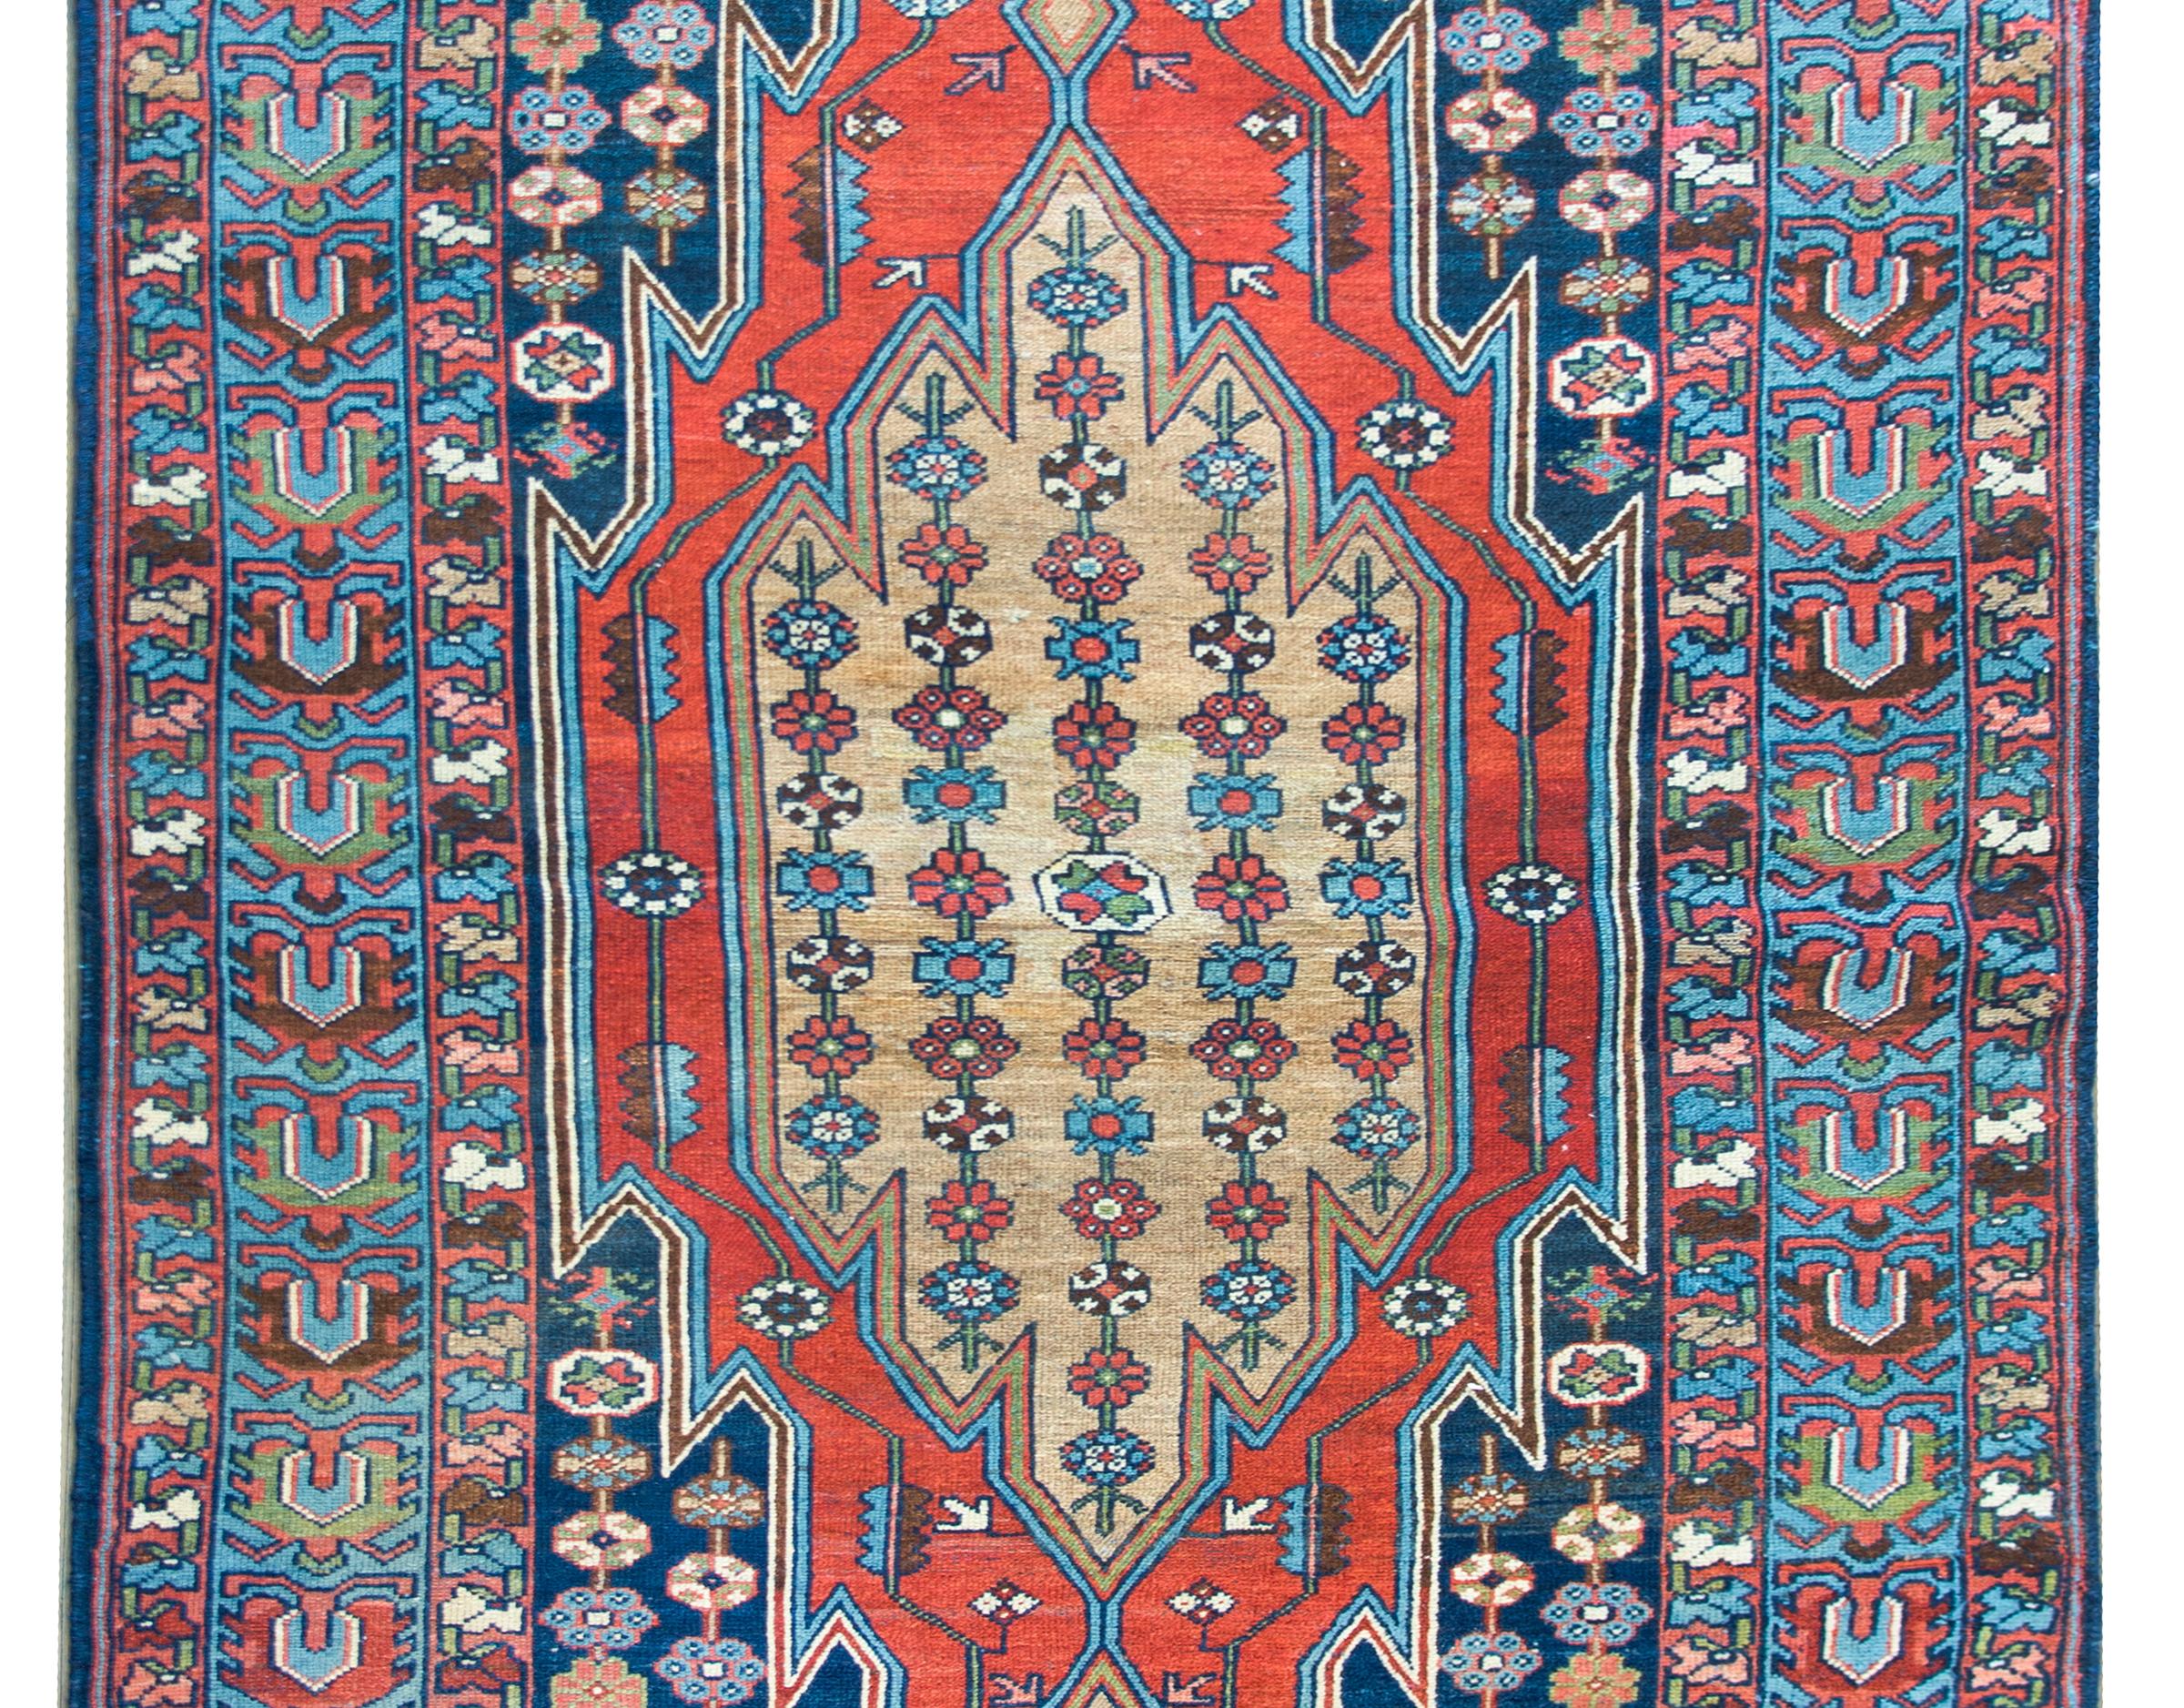 Ein schöner persischer Mazleghan-Teppich aus dem frühen 20. Jahrhundert mit einem großen zentralen Medaillon mit streifenförmig angeordneten Blumen inmitten eines Feldes mit noch mehr Blumen, umgeben von einer breiten Bordüre mit einem breiten